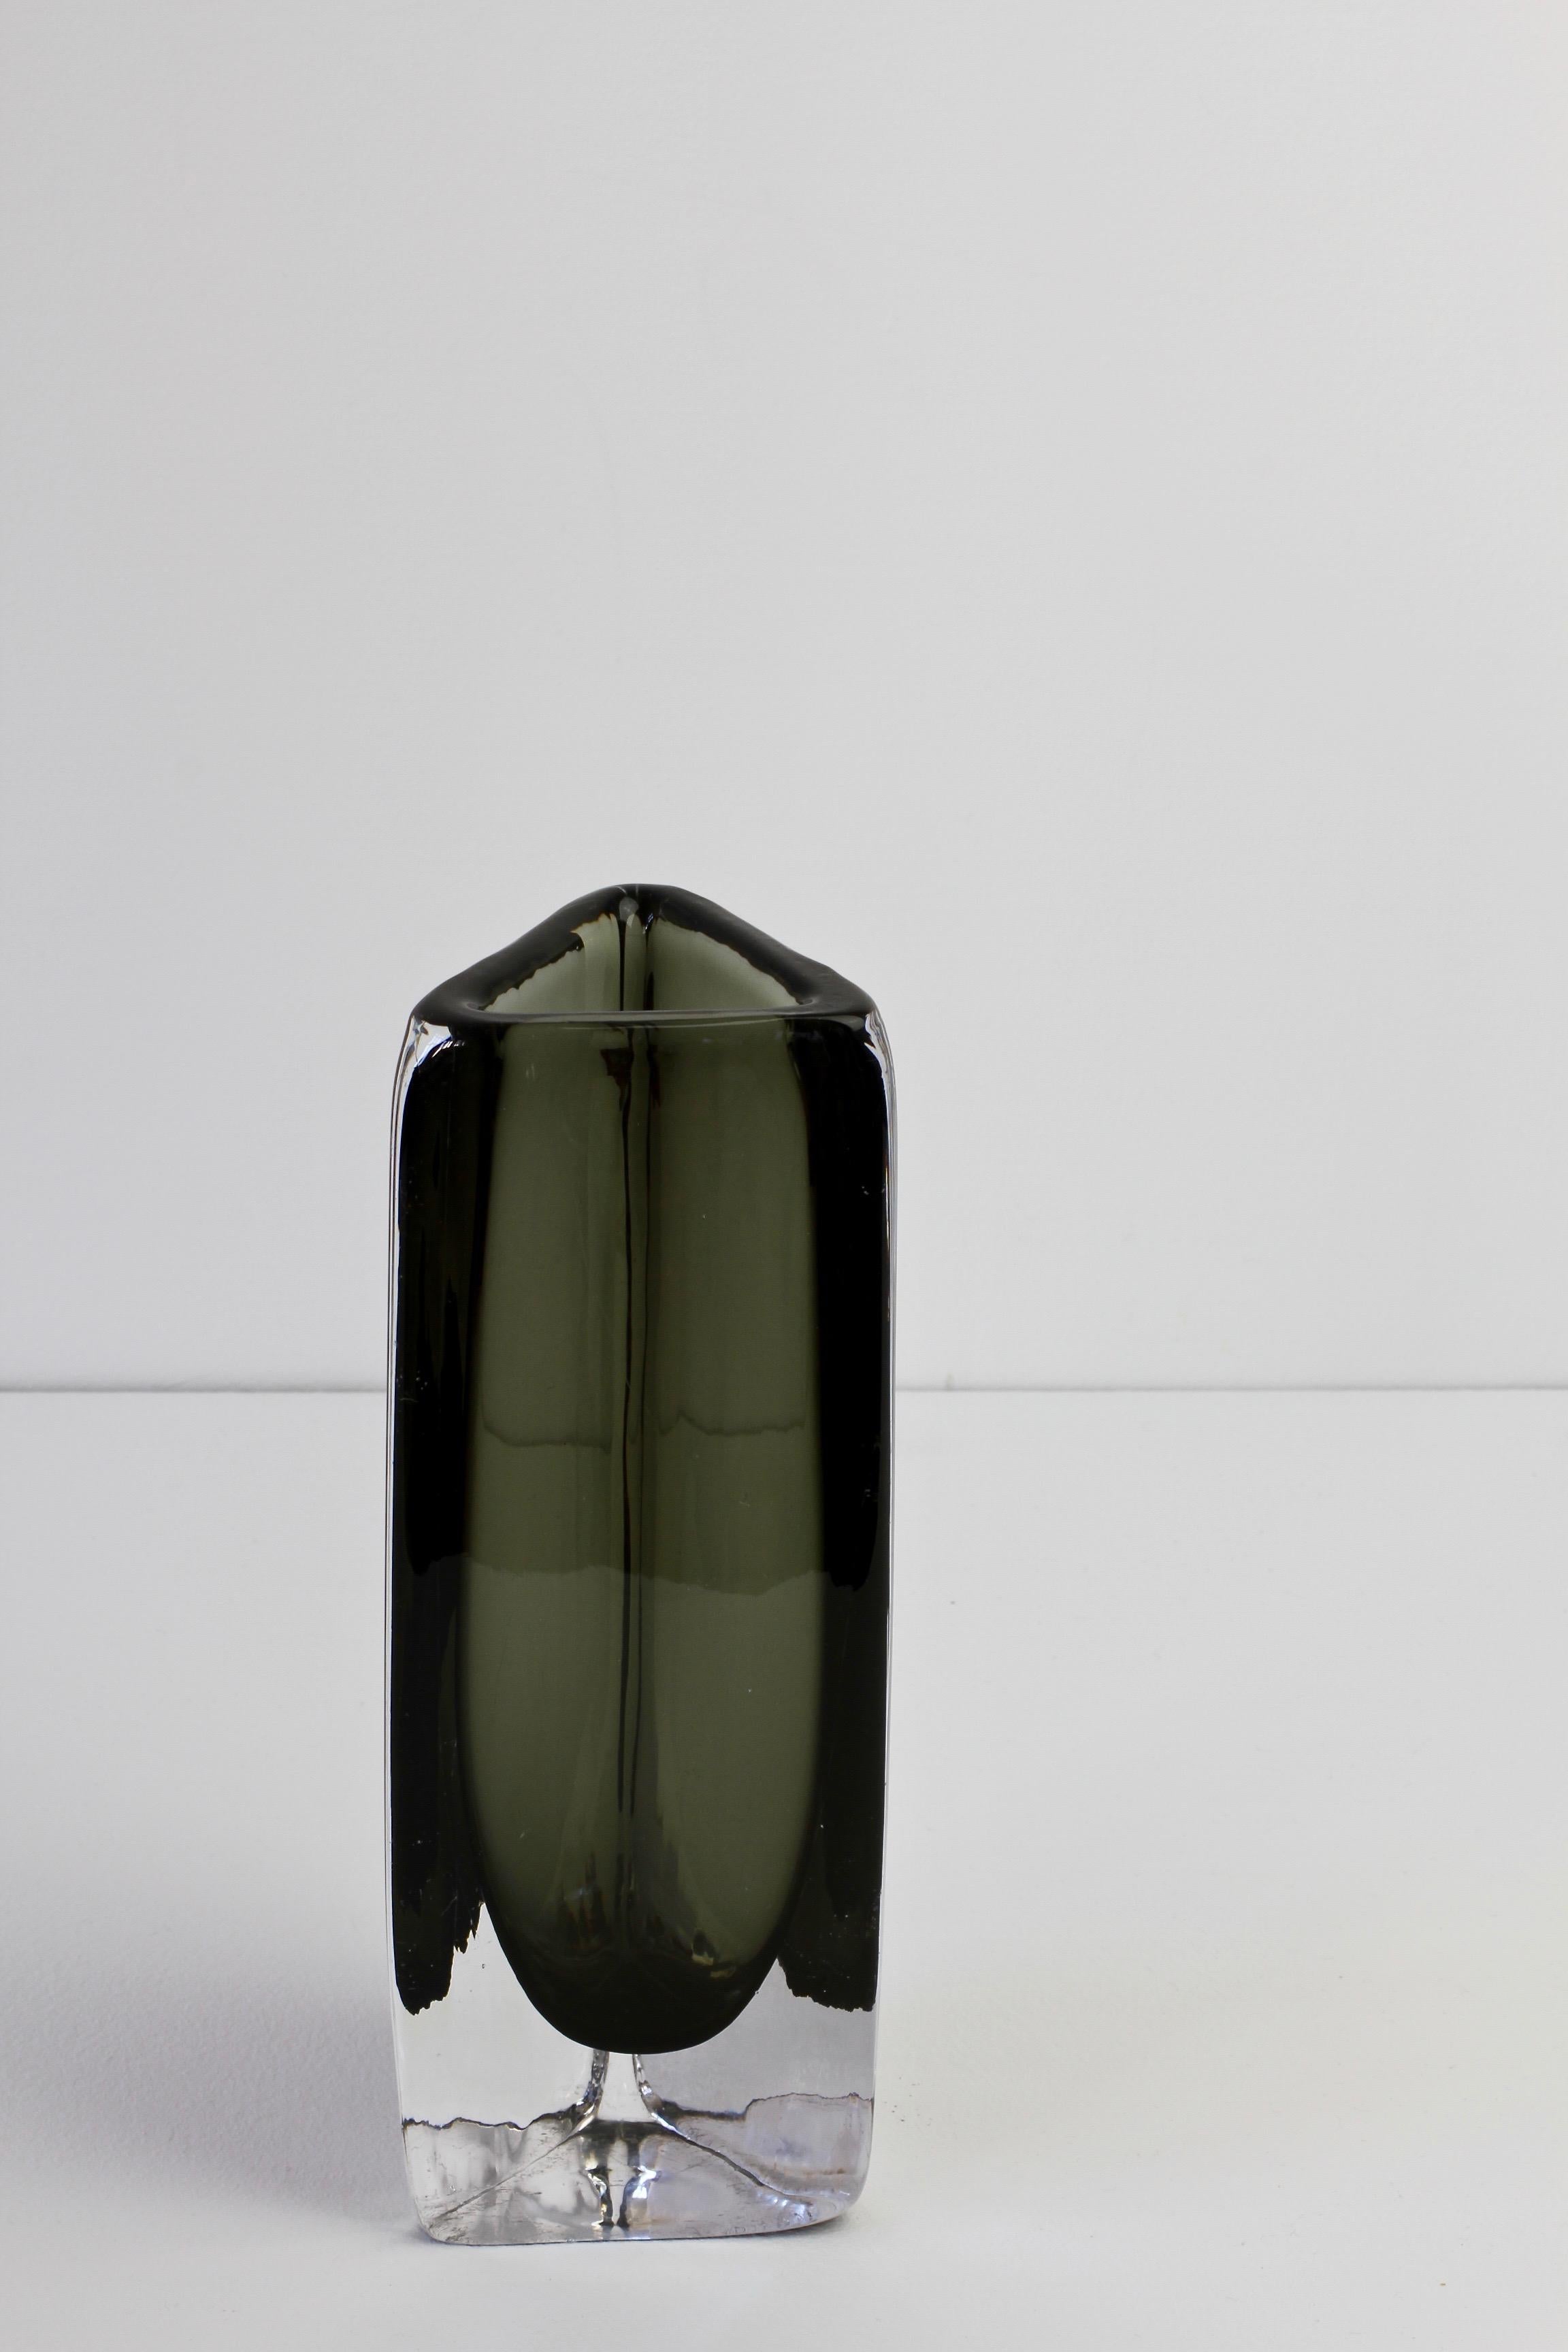 Tall 1950s Dark Toned Sommerso Vase Signed Nils Landberg for Orrefors Glass For Sale 9